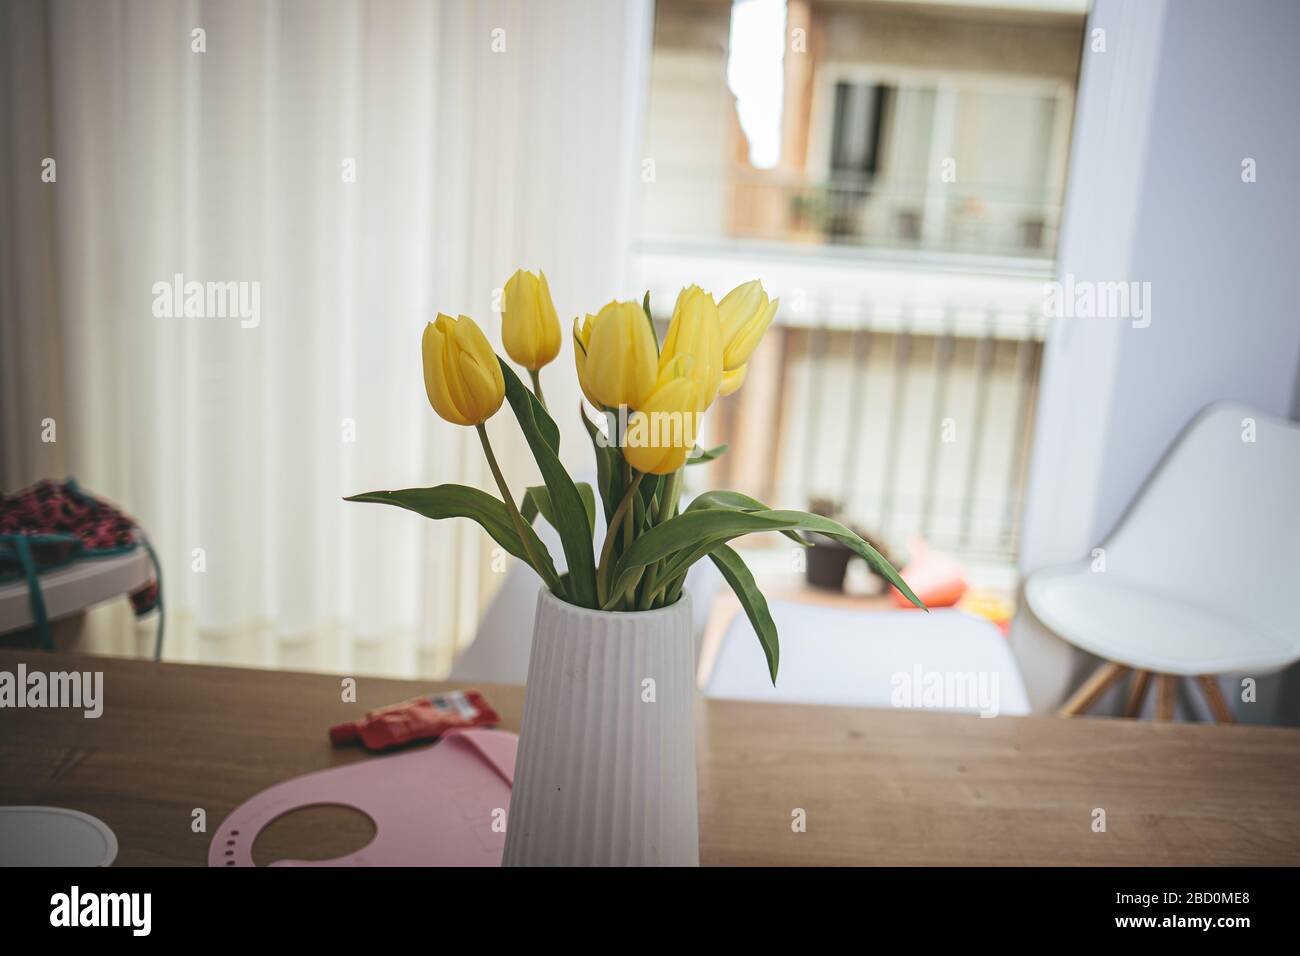 Gelber Blumenstrauß auf weißem Sockel auf einem Hausraum unordentlich Stockfoto